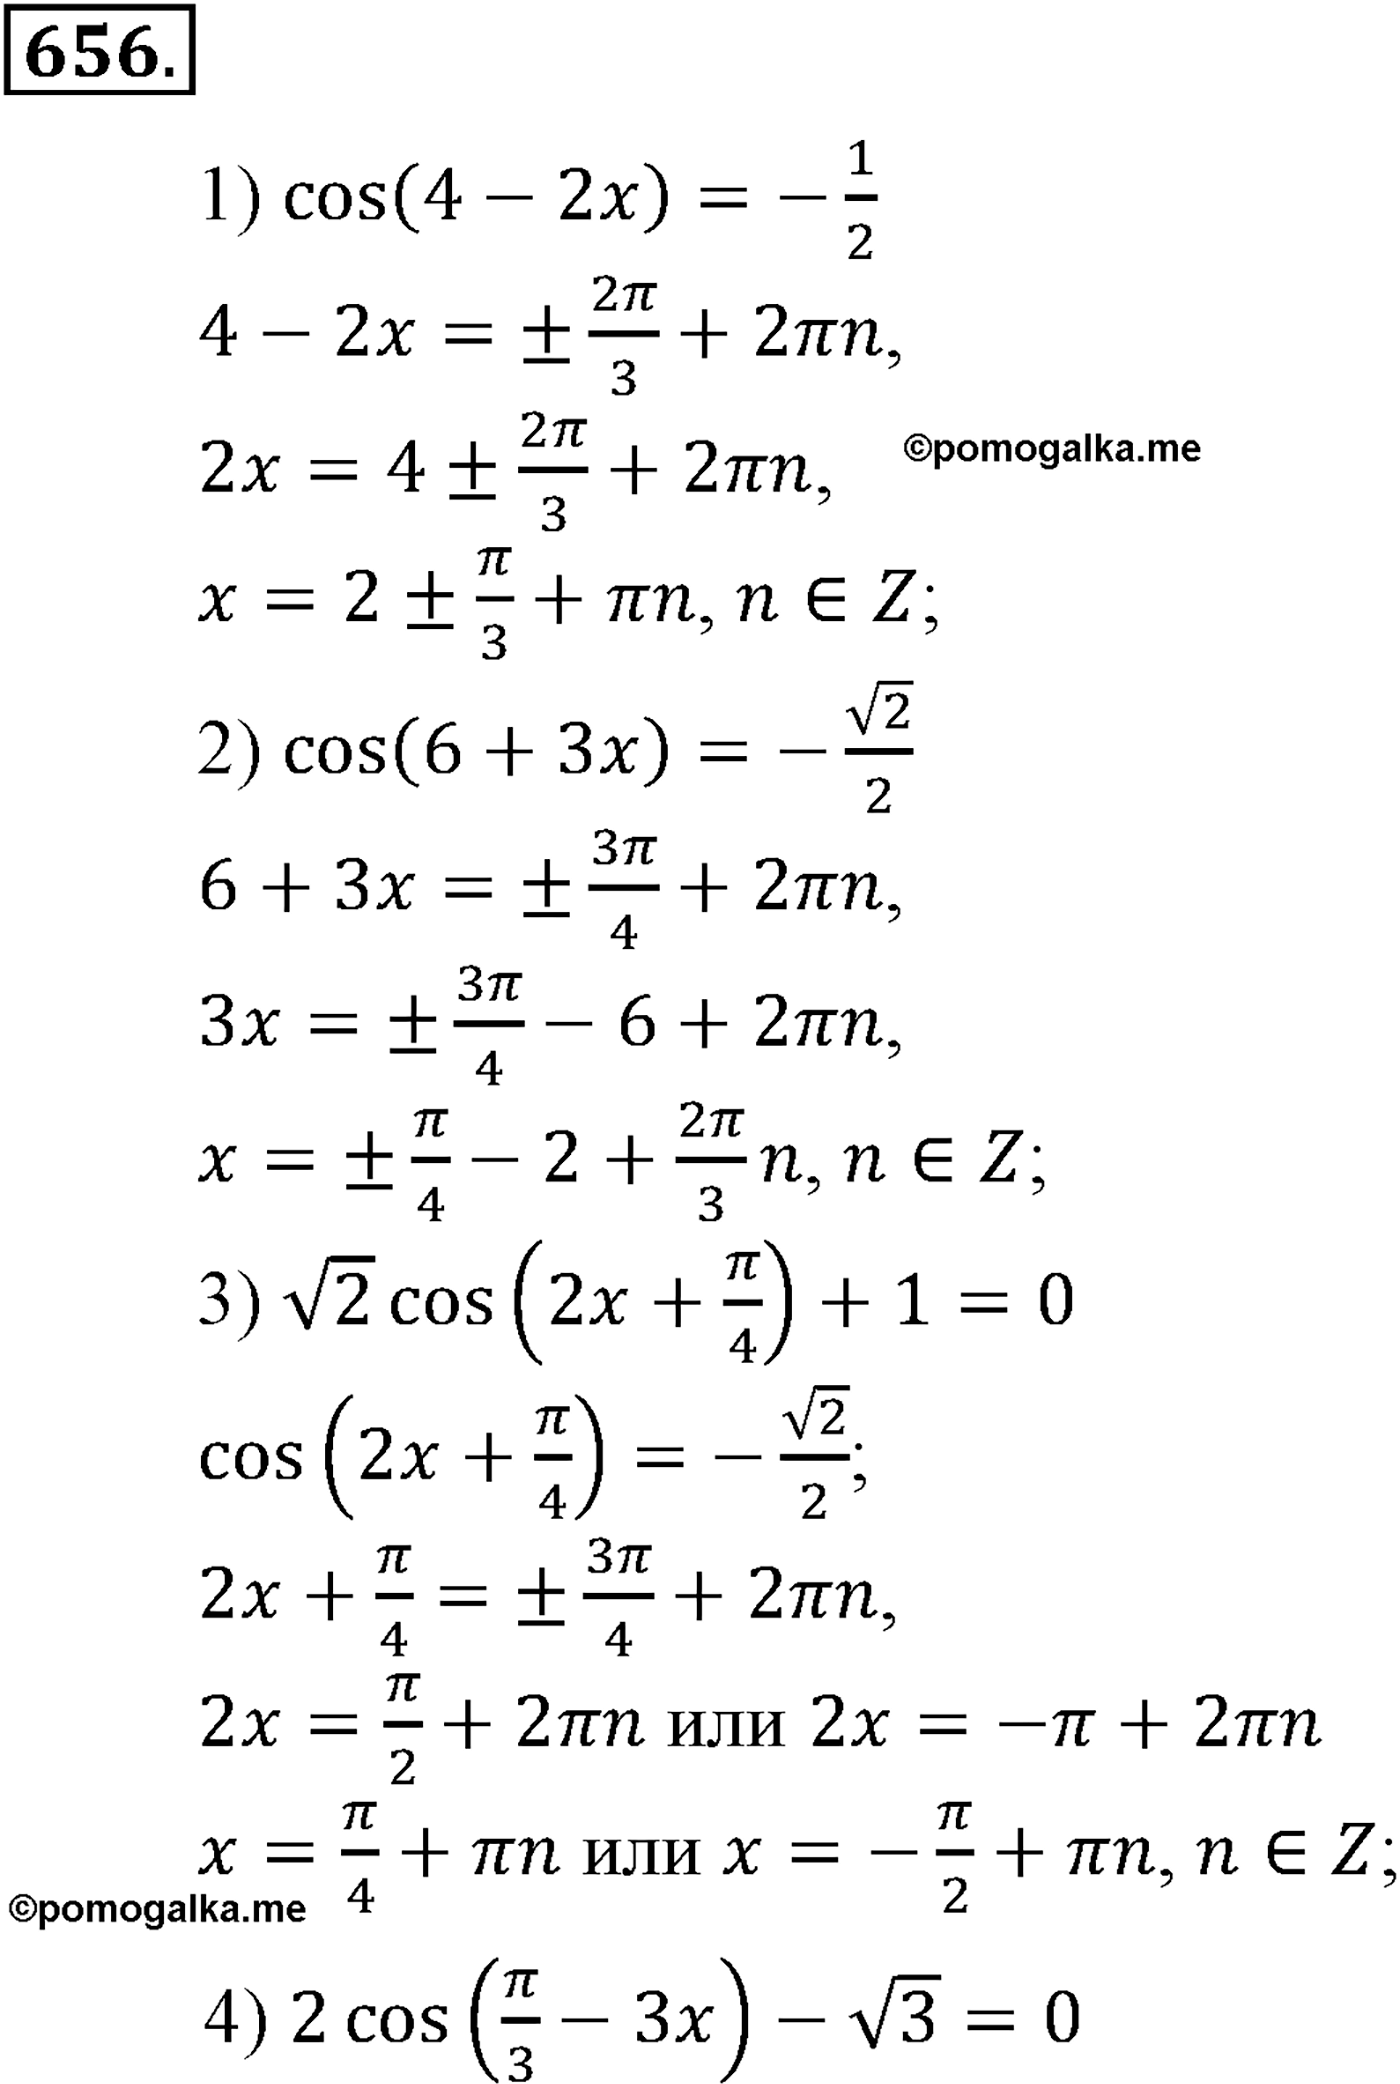 разбор задачи №656 по алгебре за 10-11 класс из учебника Алимова, Колягина